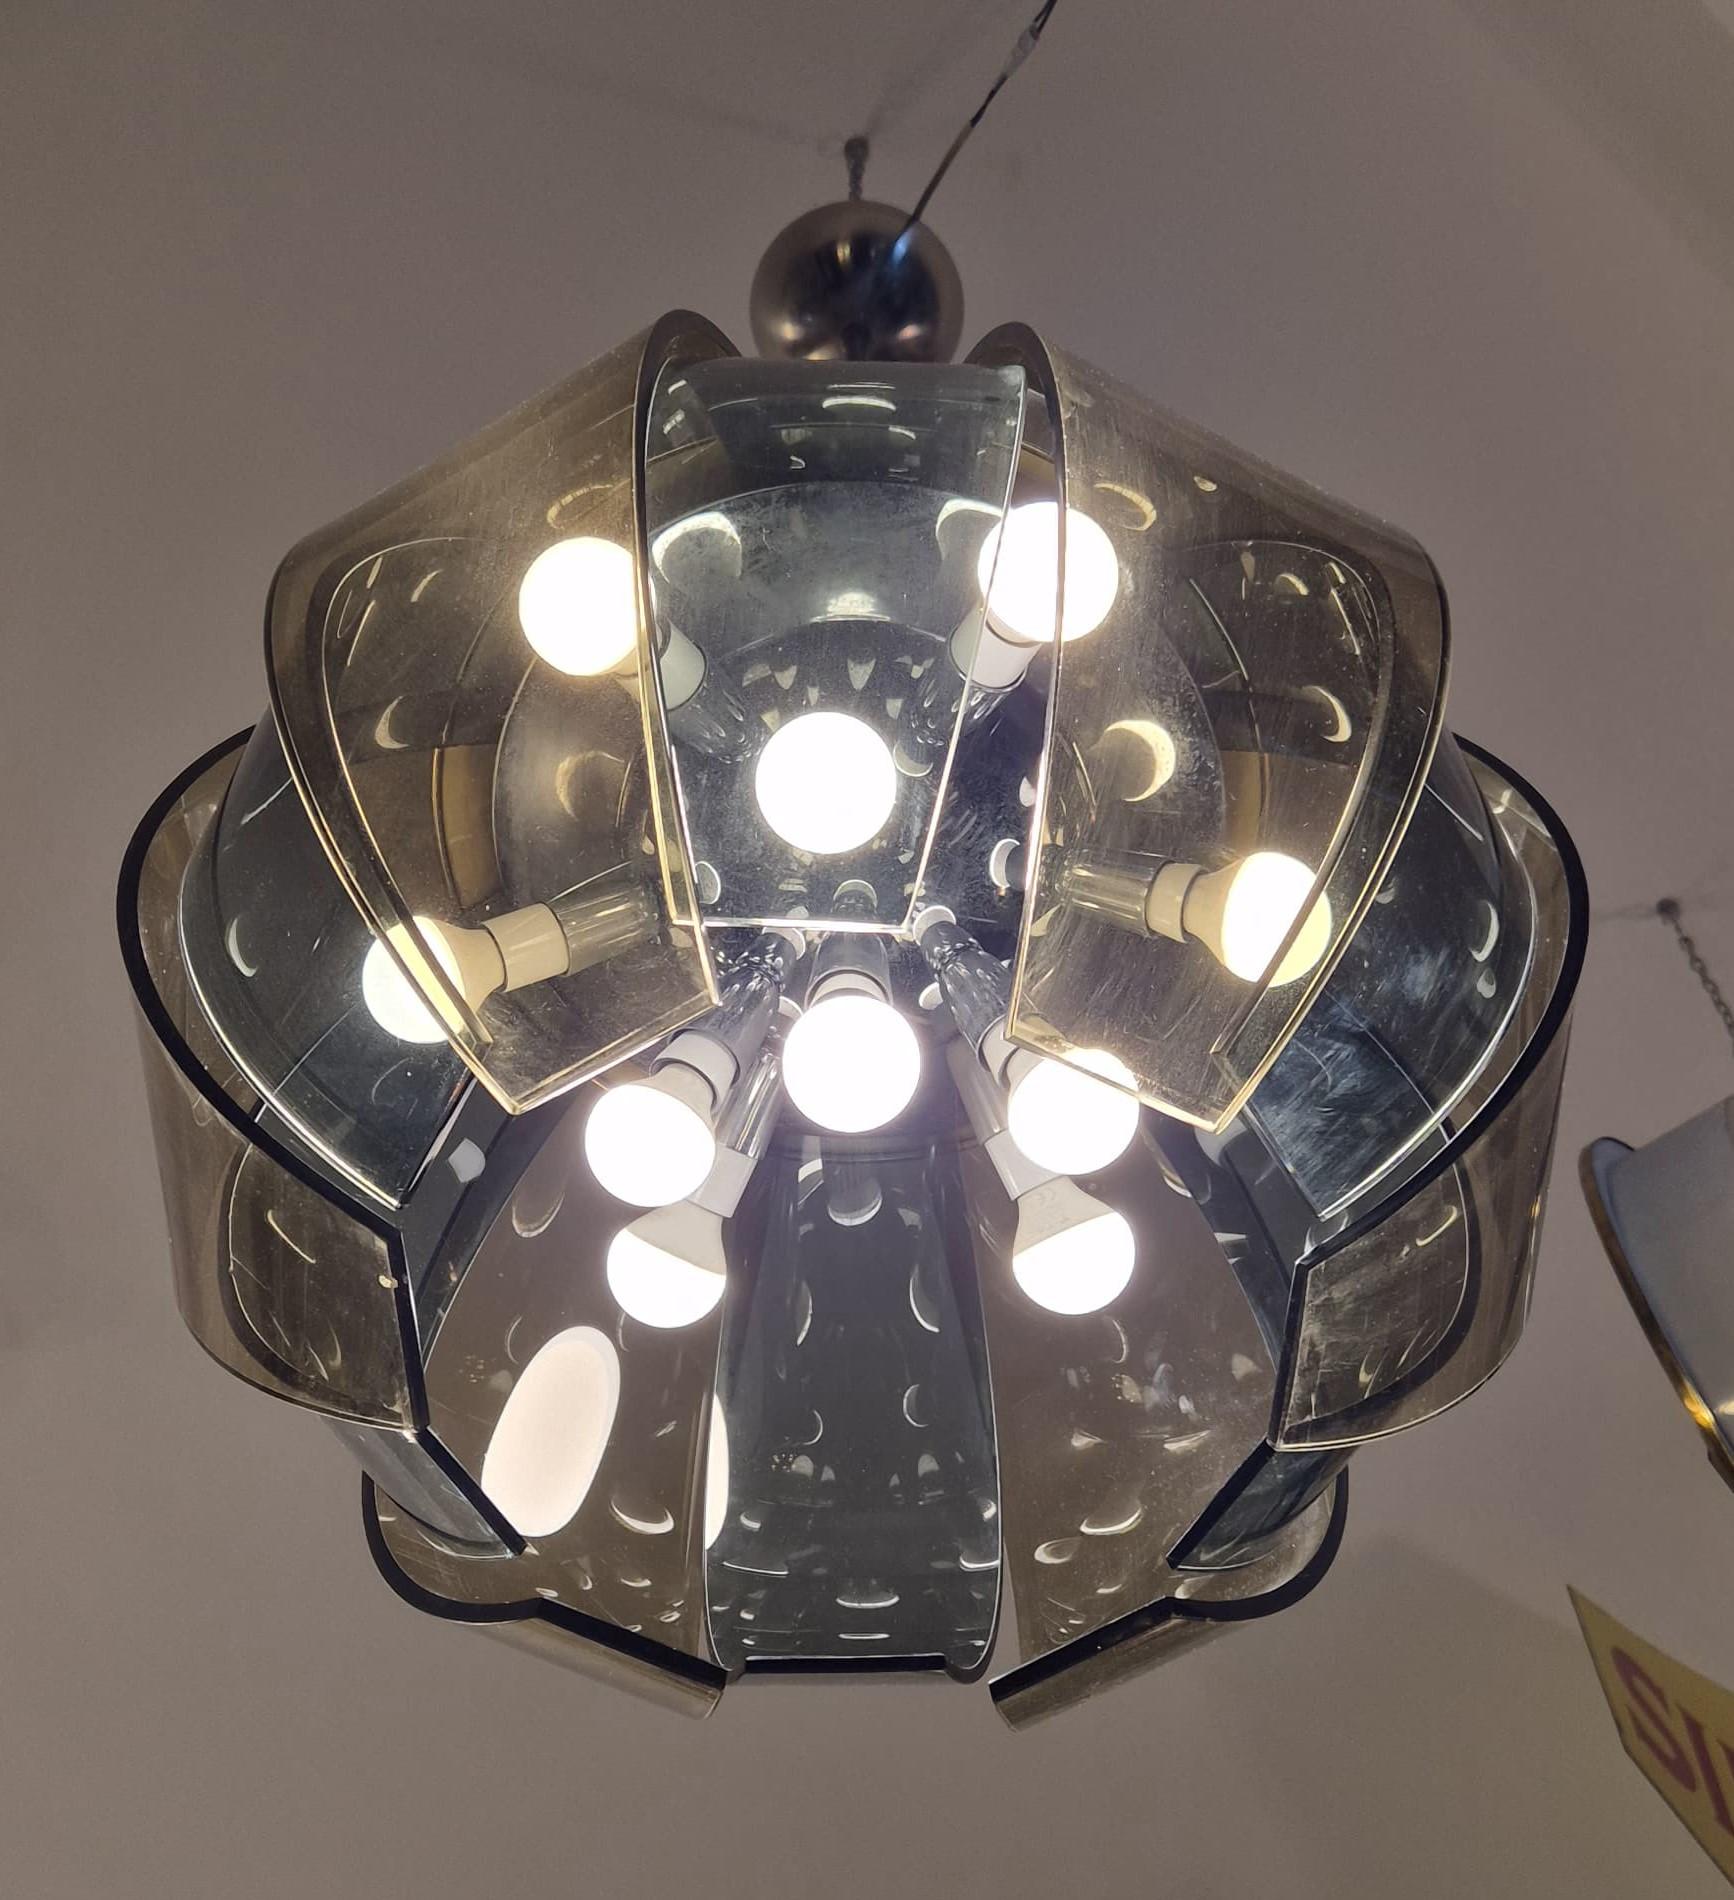 Lampe suspendue Stilnovo, cadre métallique avec 10 ampoules et 12 vitres en verre bicolore.